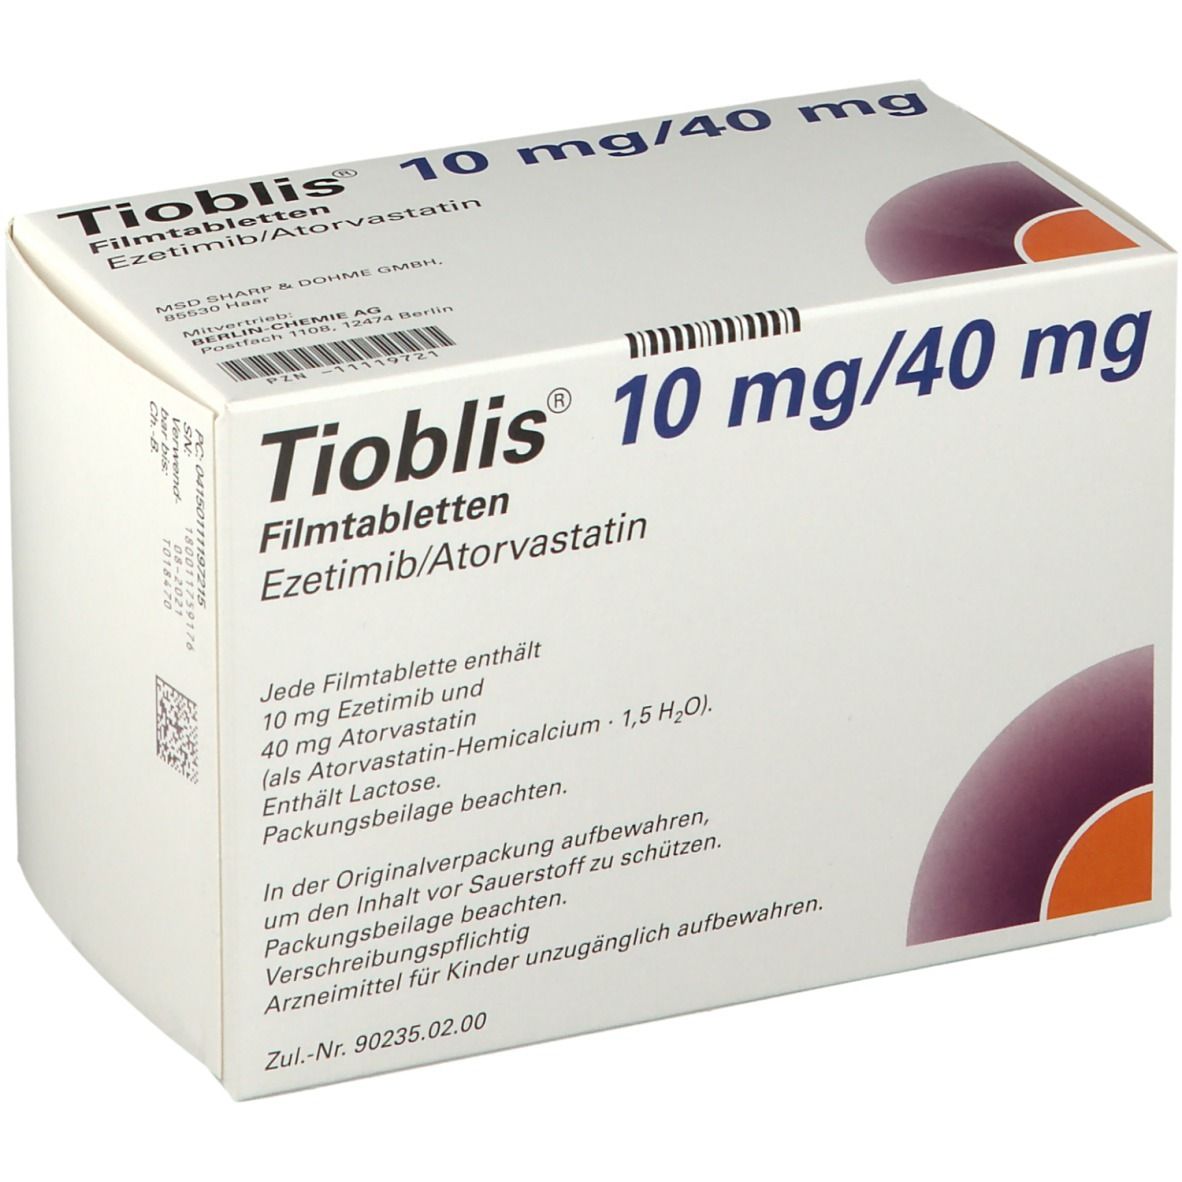 Tioblis® 10 mg/40 mg